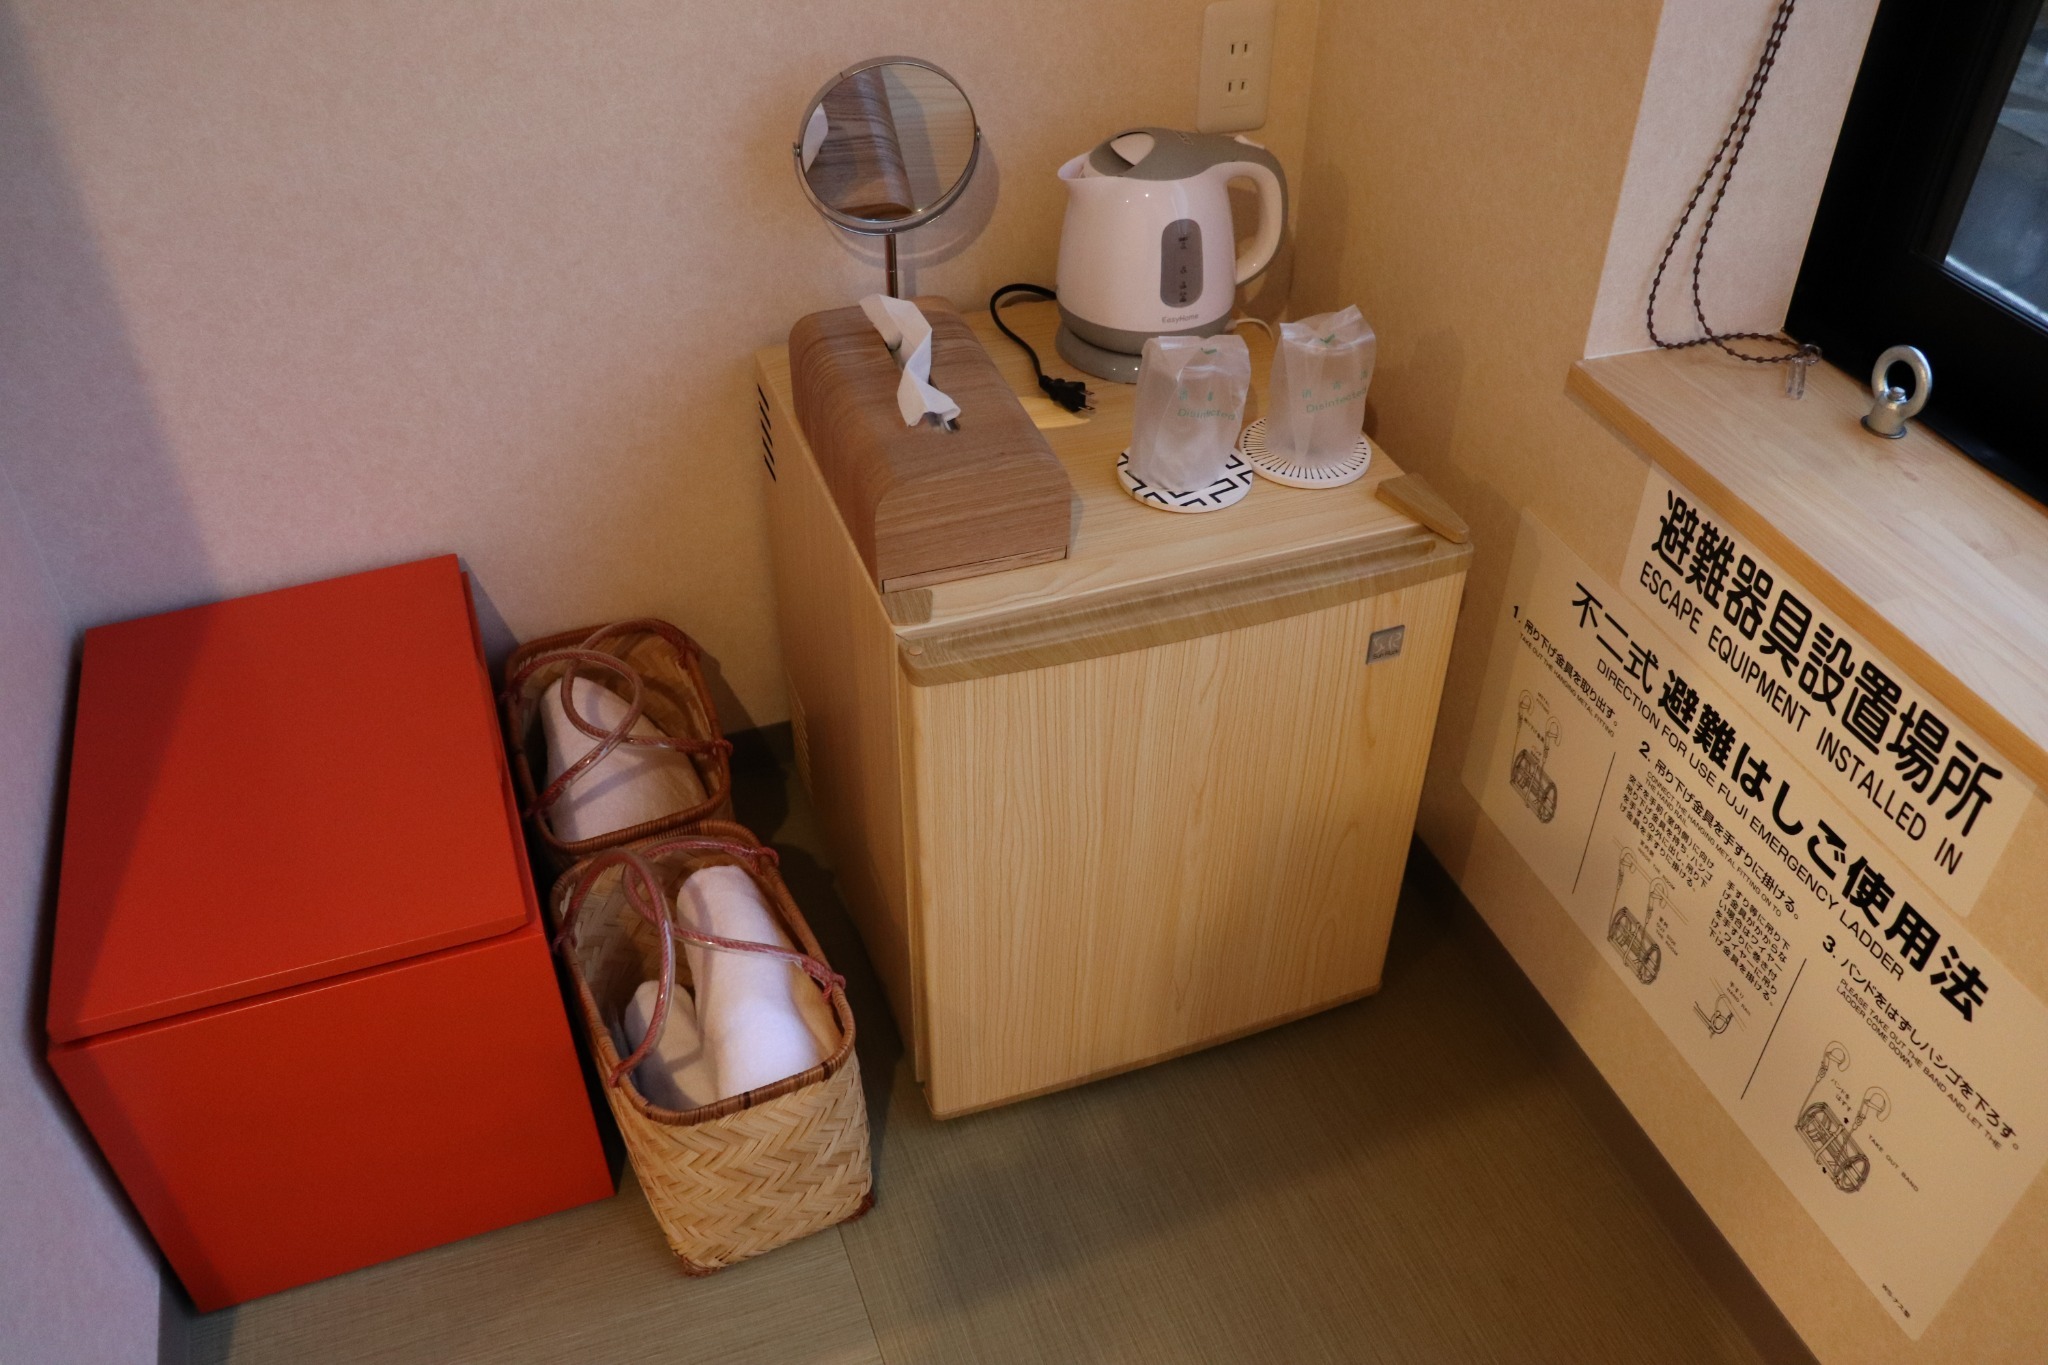 202城崎温泉駅から徒歩一分!今なら一階カフェのモーニングセットと2階「華」レンタル浴衣が無料!